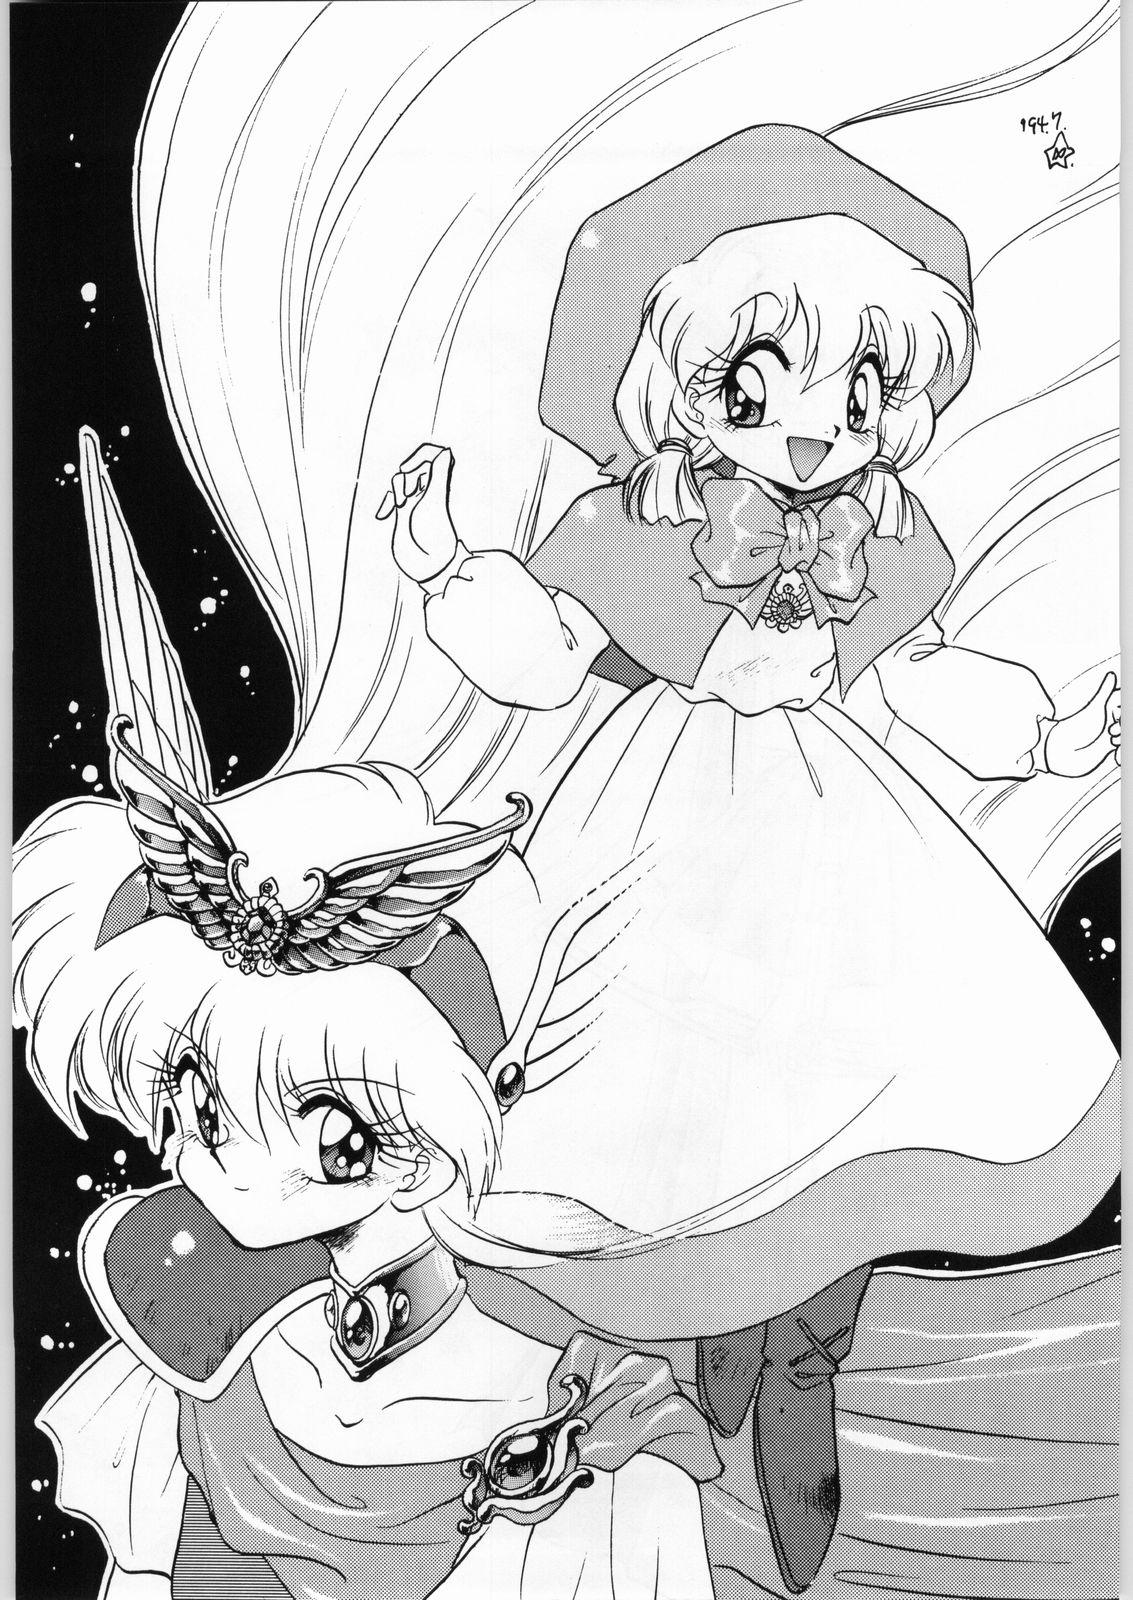 Fodendo Dance of Princess 3 - Sailor moon Tenchi muyo Akazukin cha cha Minky momo Ng knight lamune and 40 Adorable - Page 4